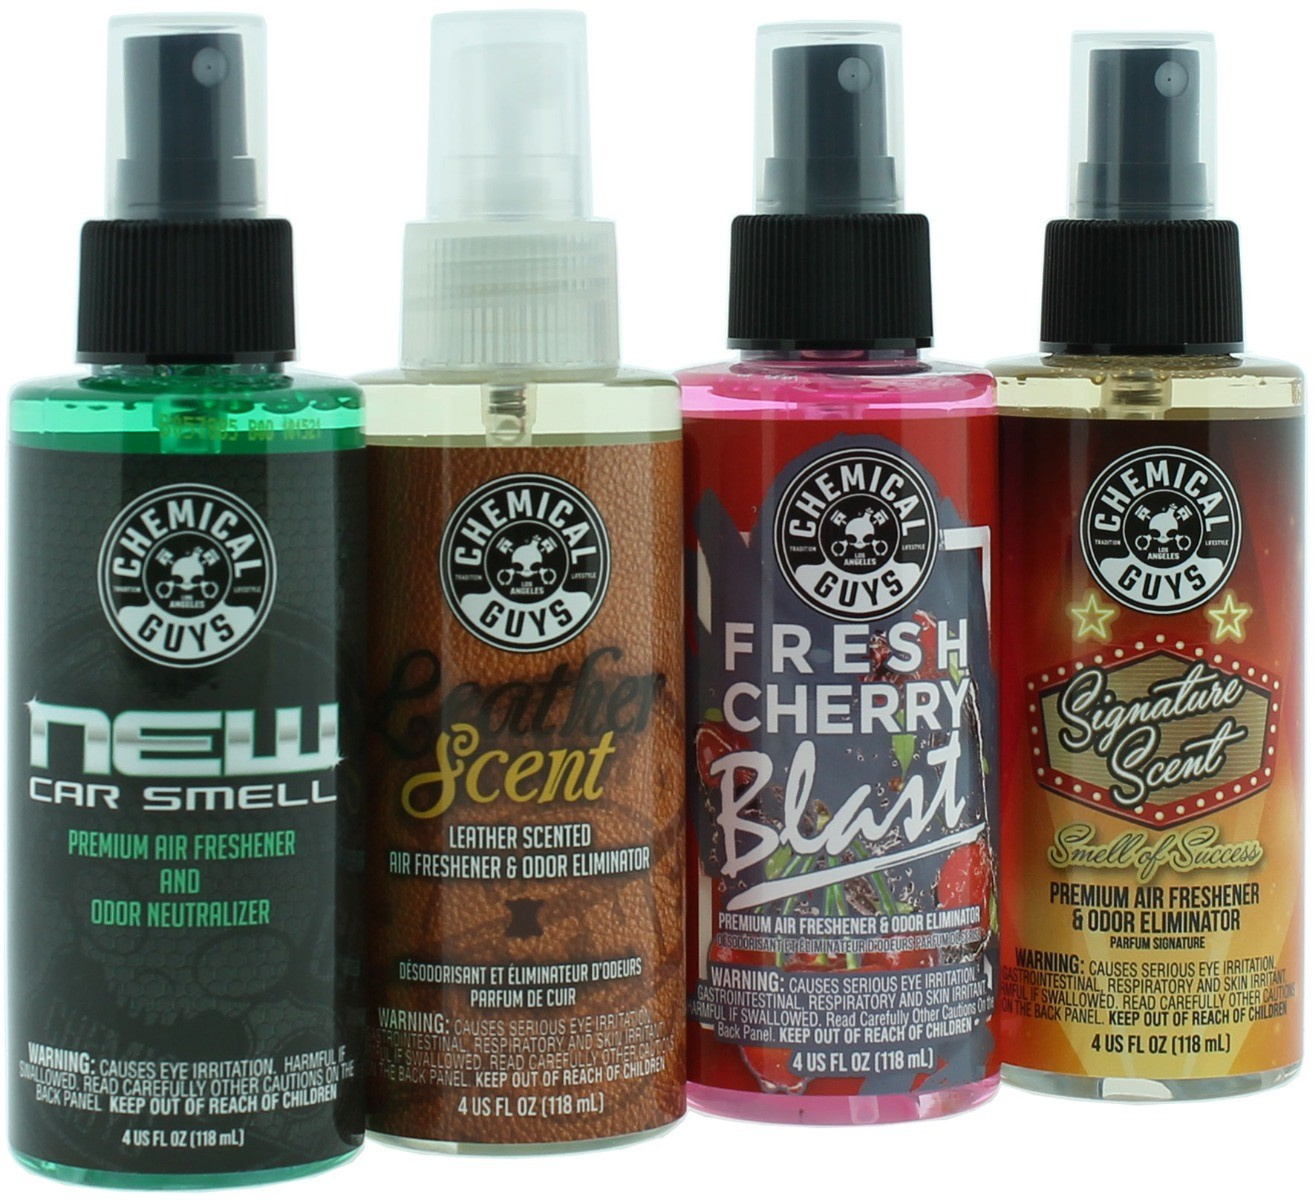 https://www.nonpaints.com/media/catalog/product/cache/5c462209641c493e8b11362149a0e638/c/h/chemical-guys-auto-parfum-essential-pack.jpg